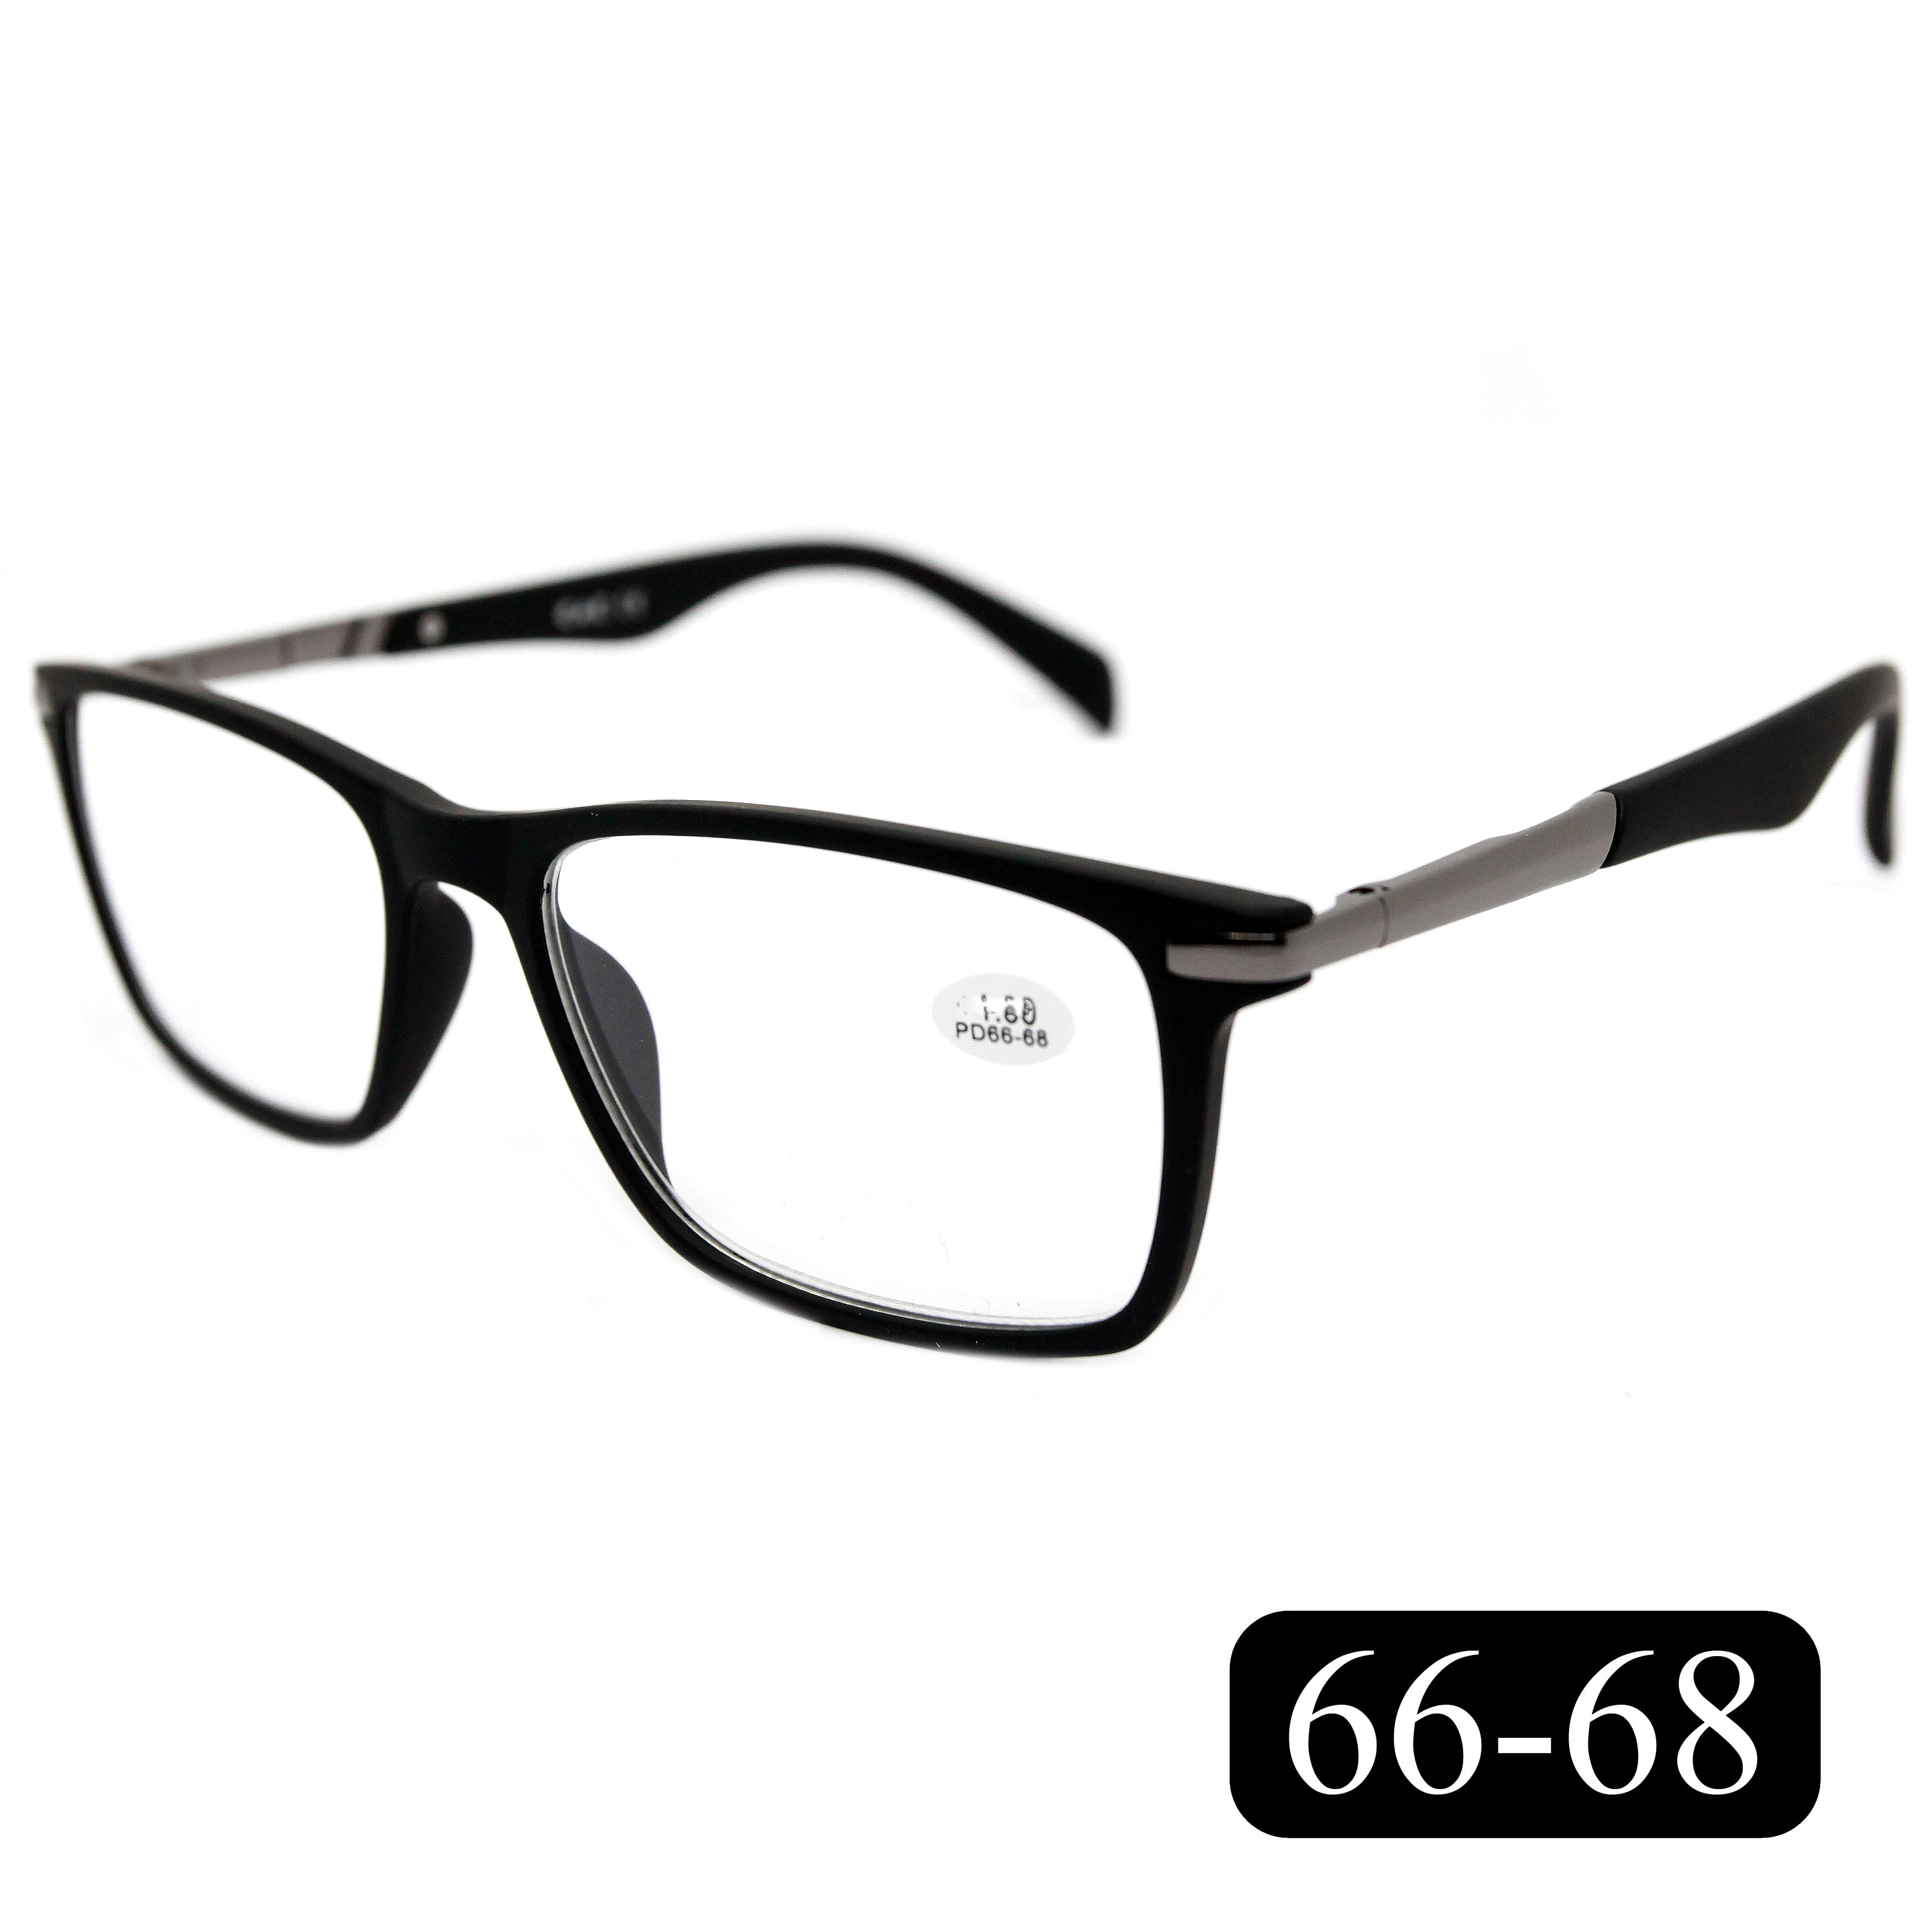 Готовые очки для зрения EAE 2177 -3.75, без футляра, цвет черный, РЦ 66-68